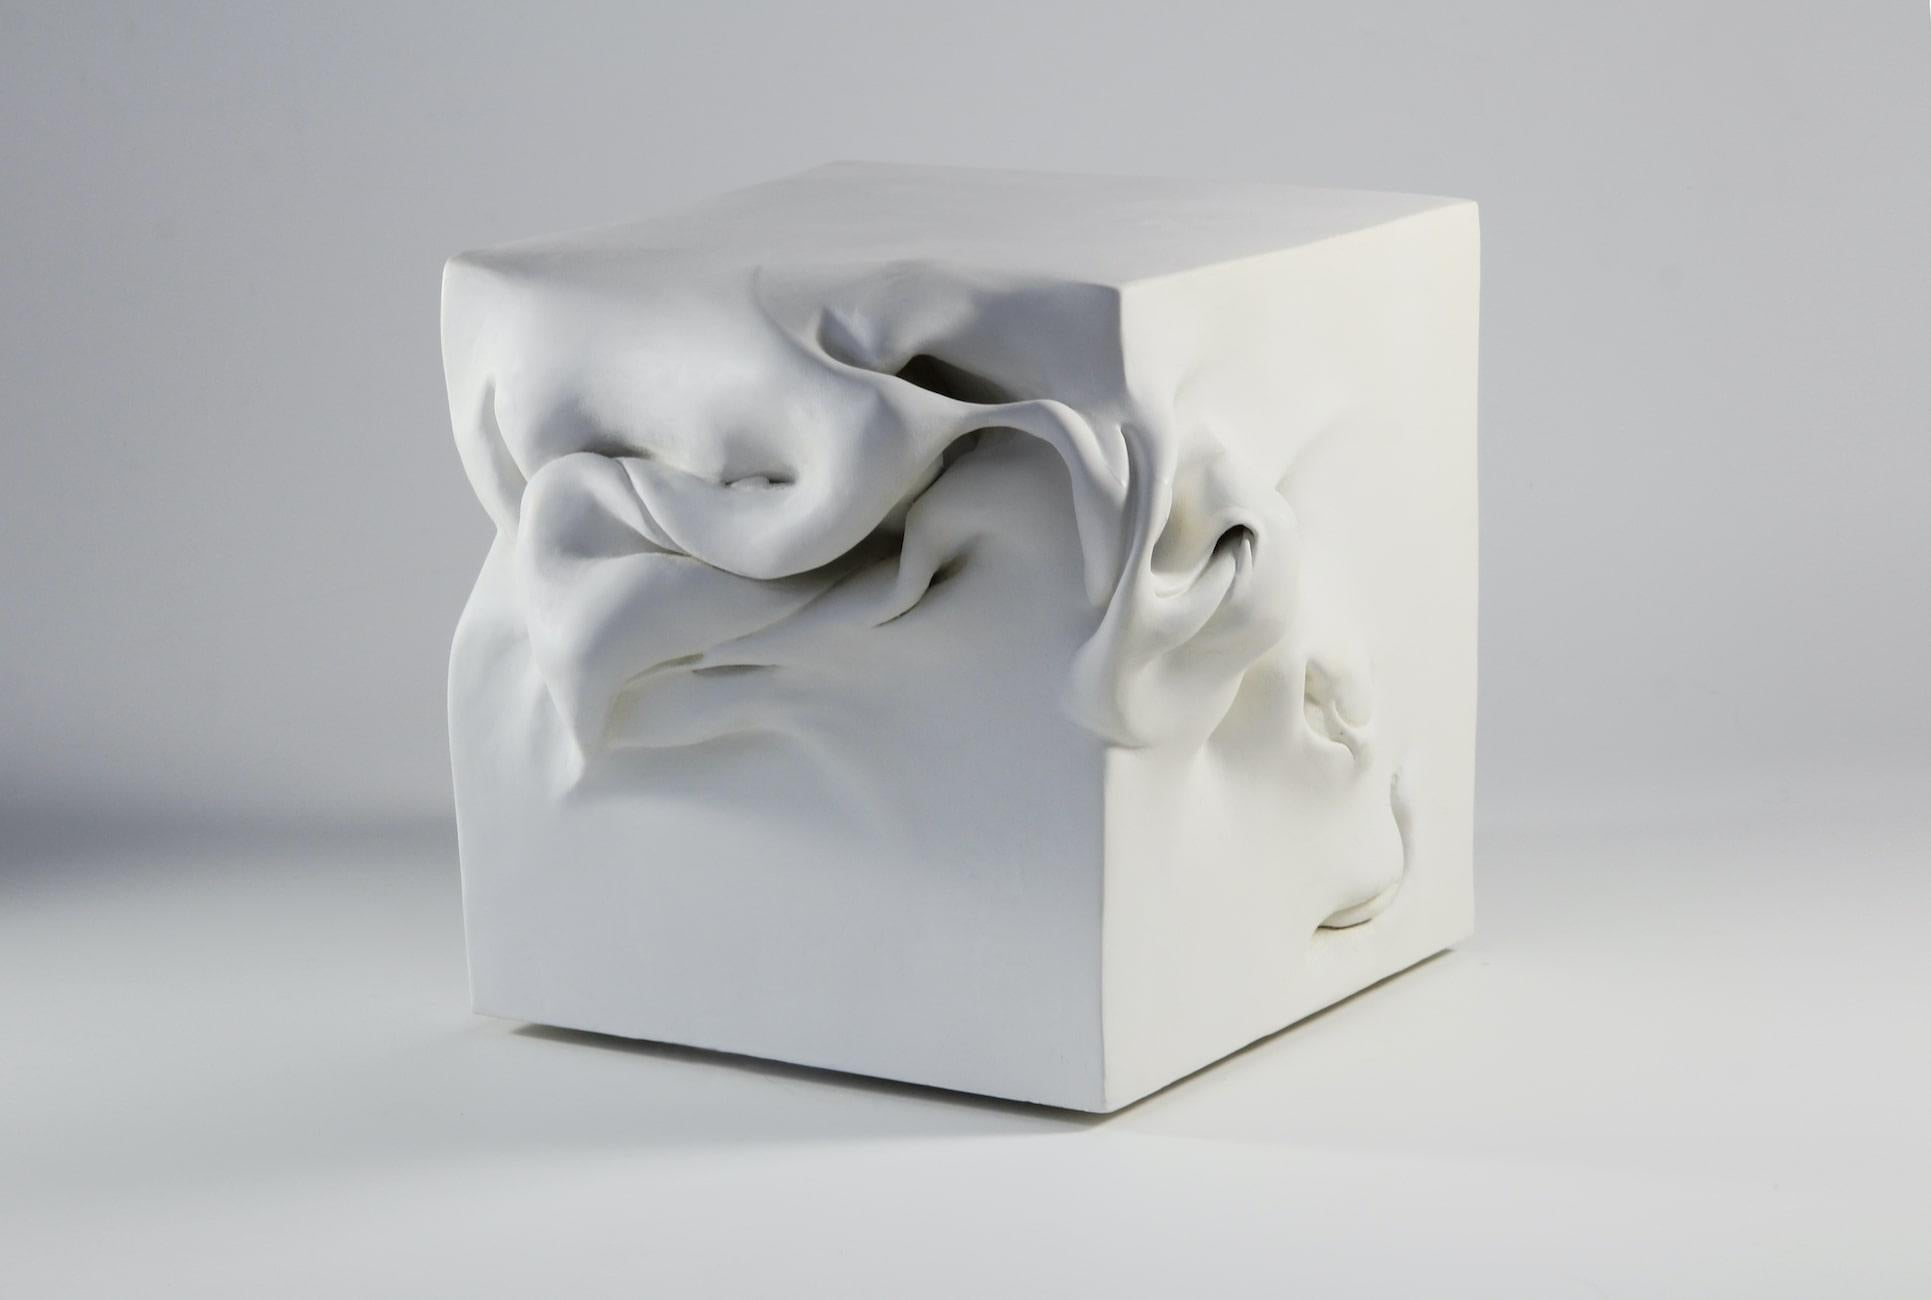 Cube 3 est une sculpture unique en argile cuite peinte de l'artiste contemporaine Sharon Brill, dont les dimensions sont de 19 × 23 × 23 cm (7,5 × 9,1 × 9,1 in). 
Cette sculpture est une pièce unique signée par l'artiste et accompagnée d'un